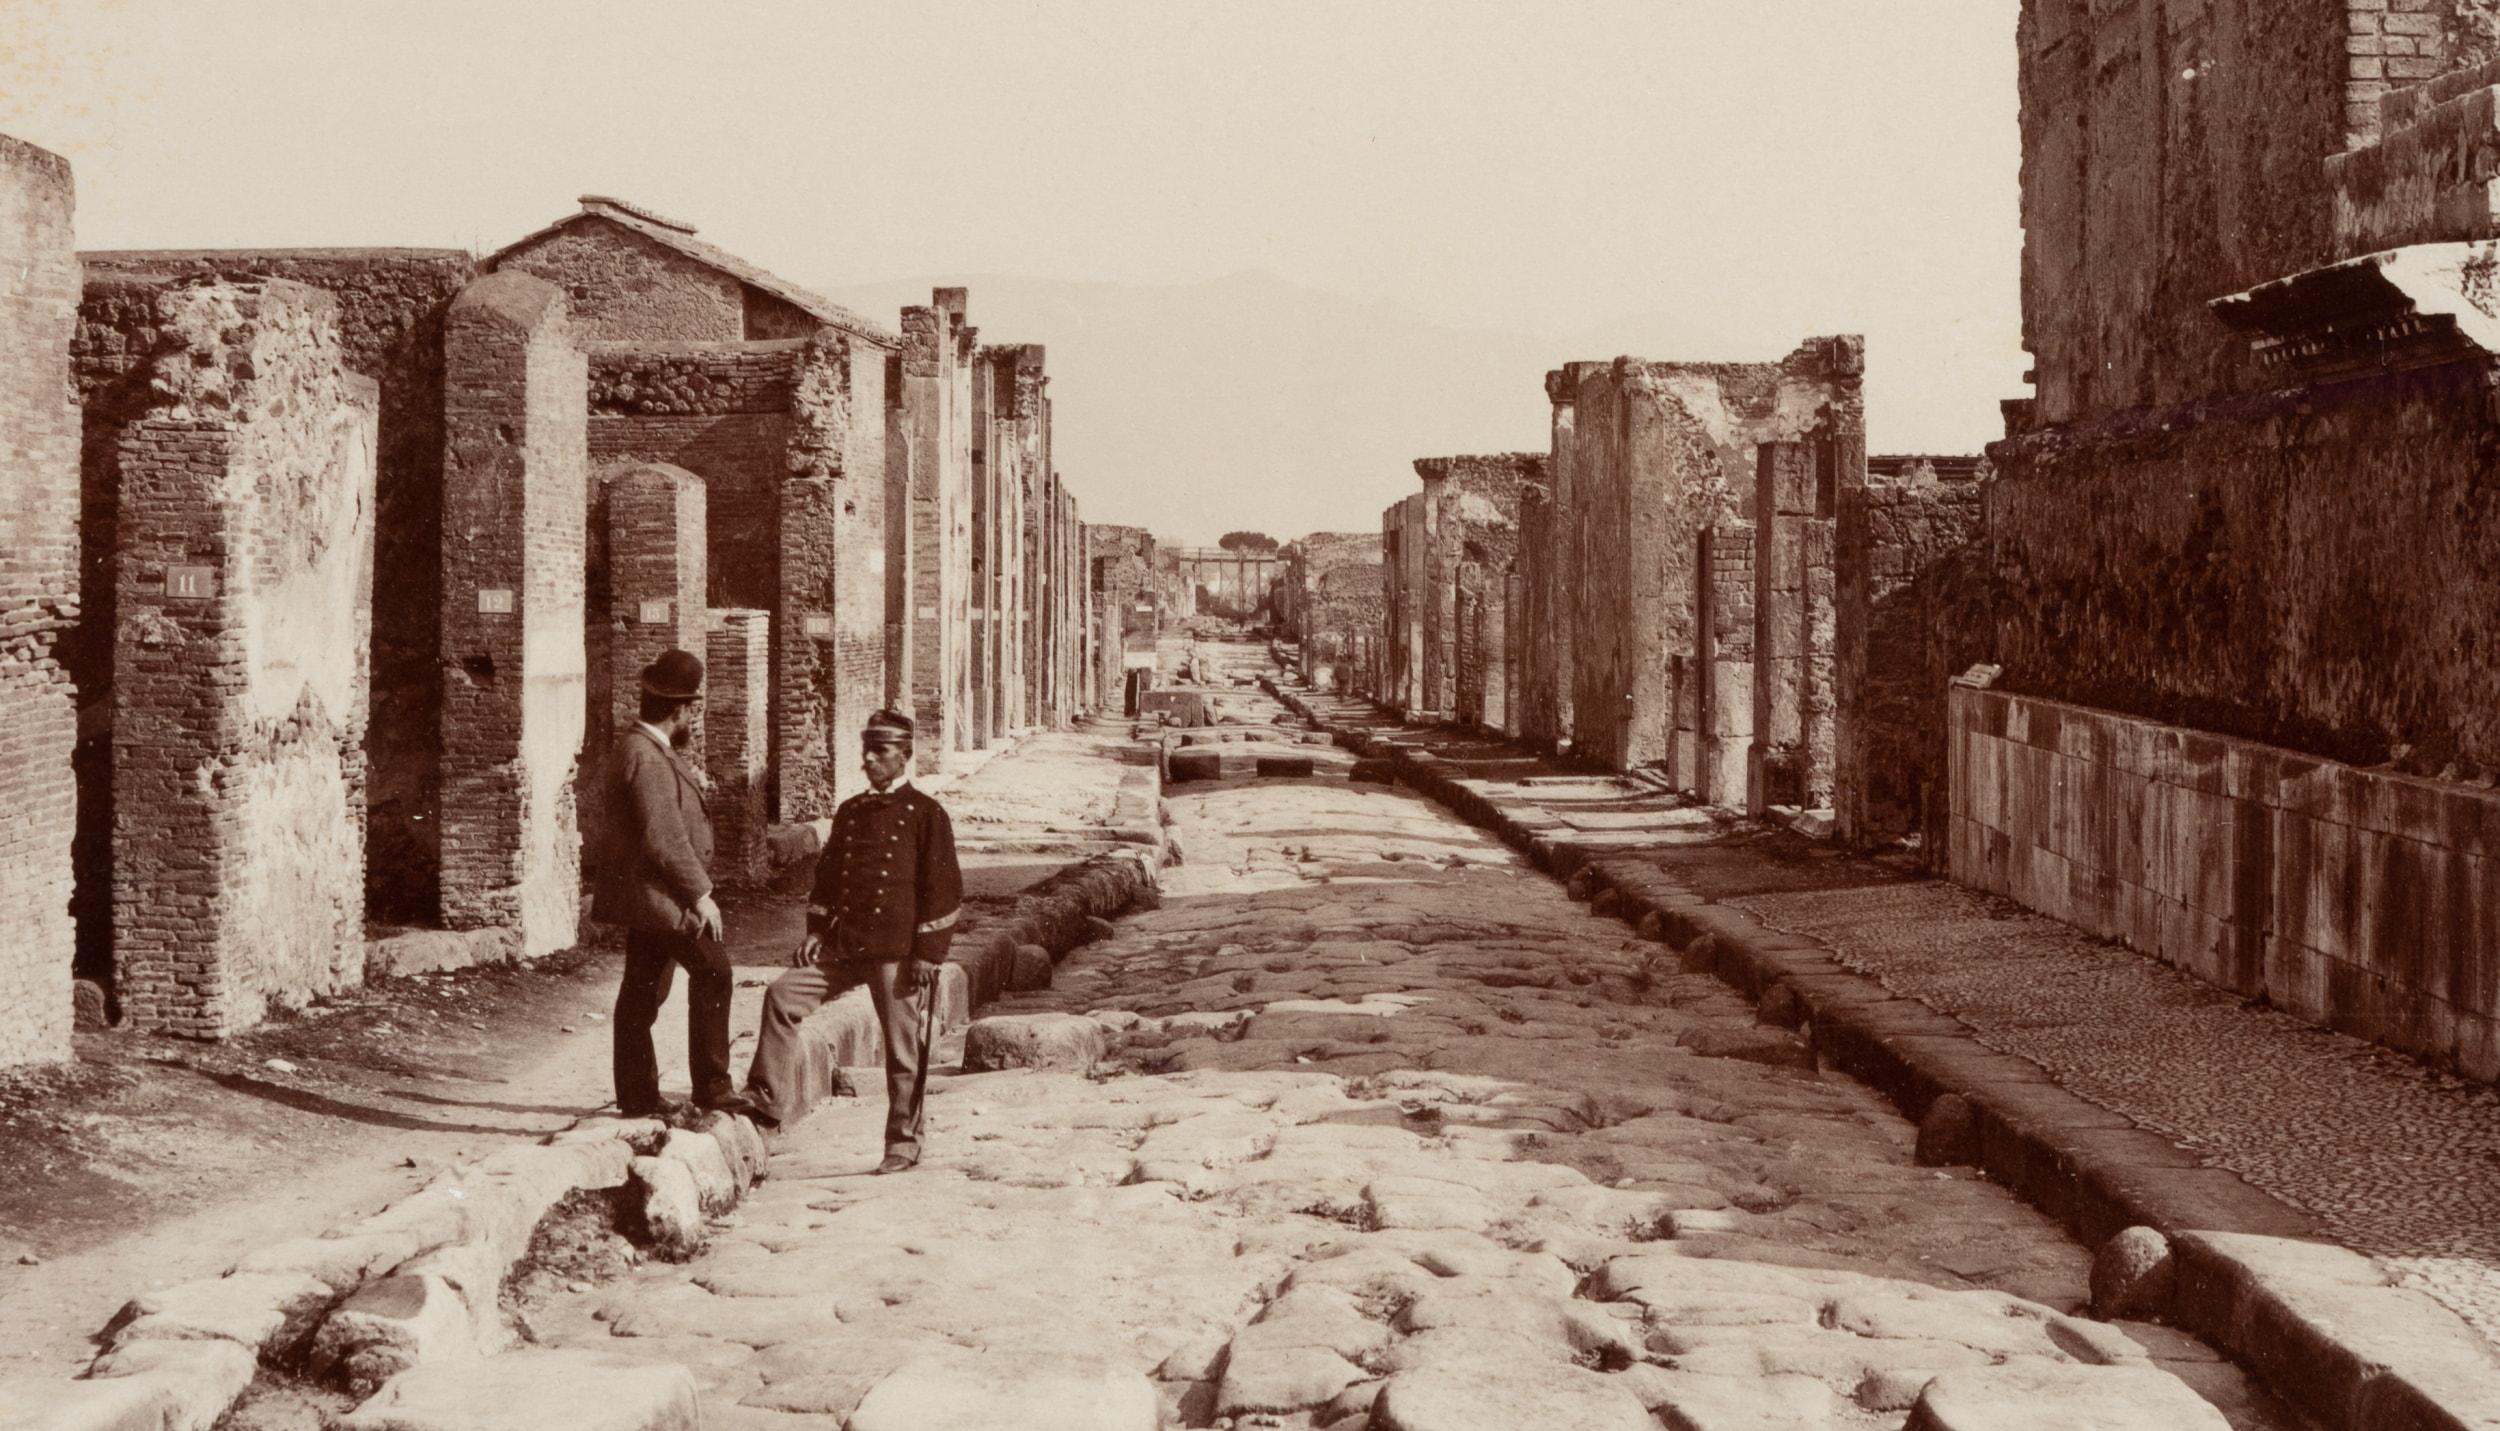 Strada della Fortuna, Pompeii - Photograph by Fratelli Alinari